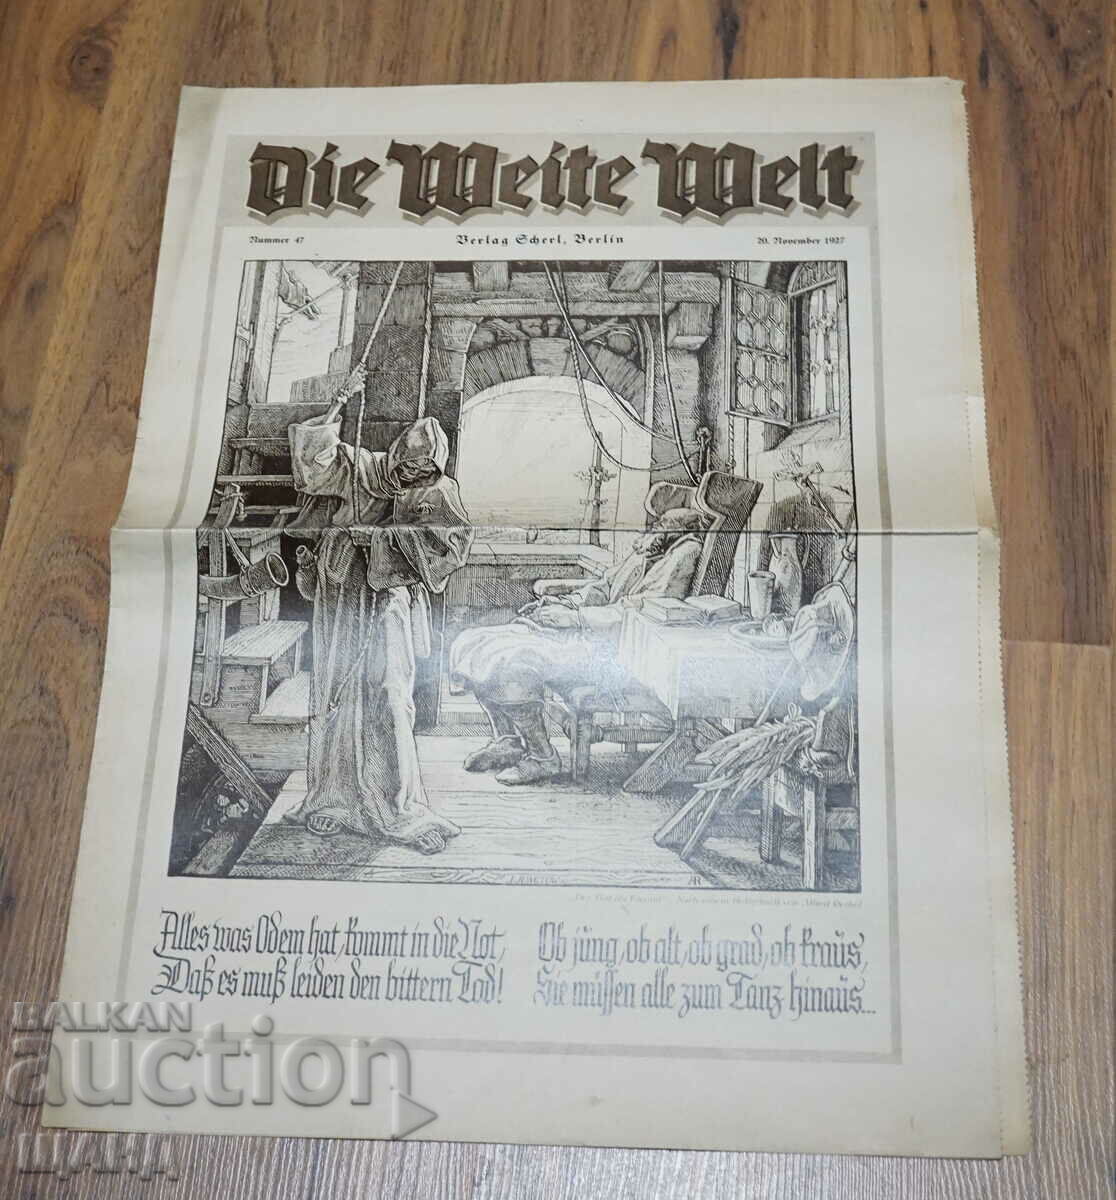 1927 German magazine newspaper DIE WEITE WELT issue 47